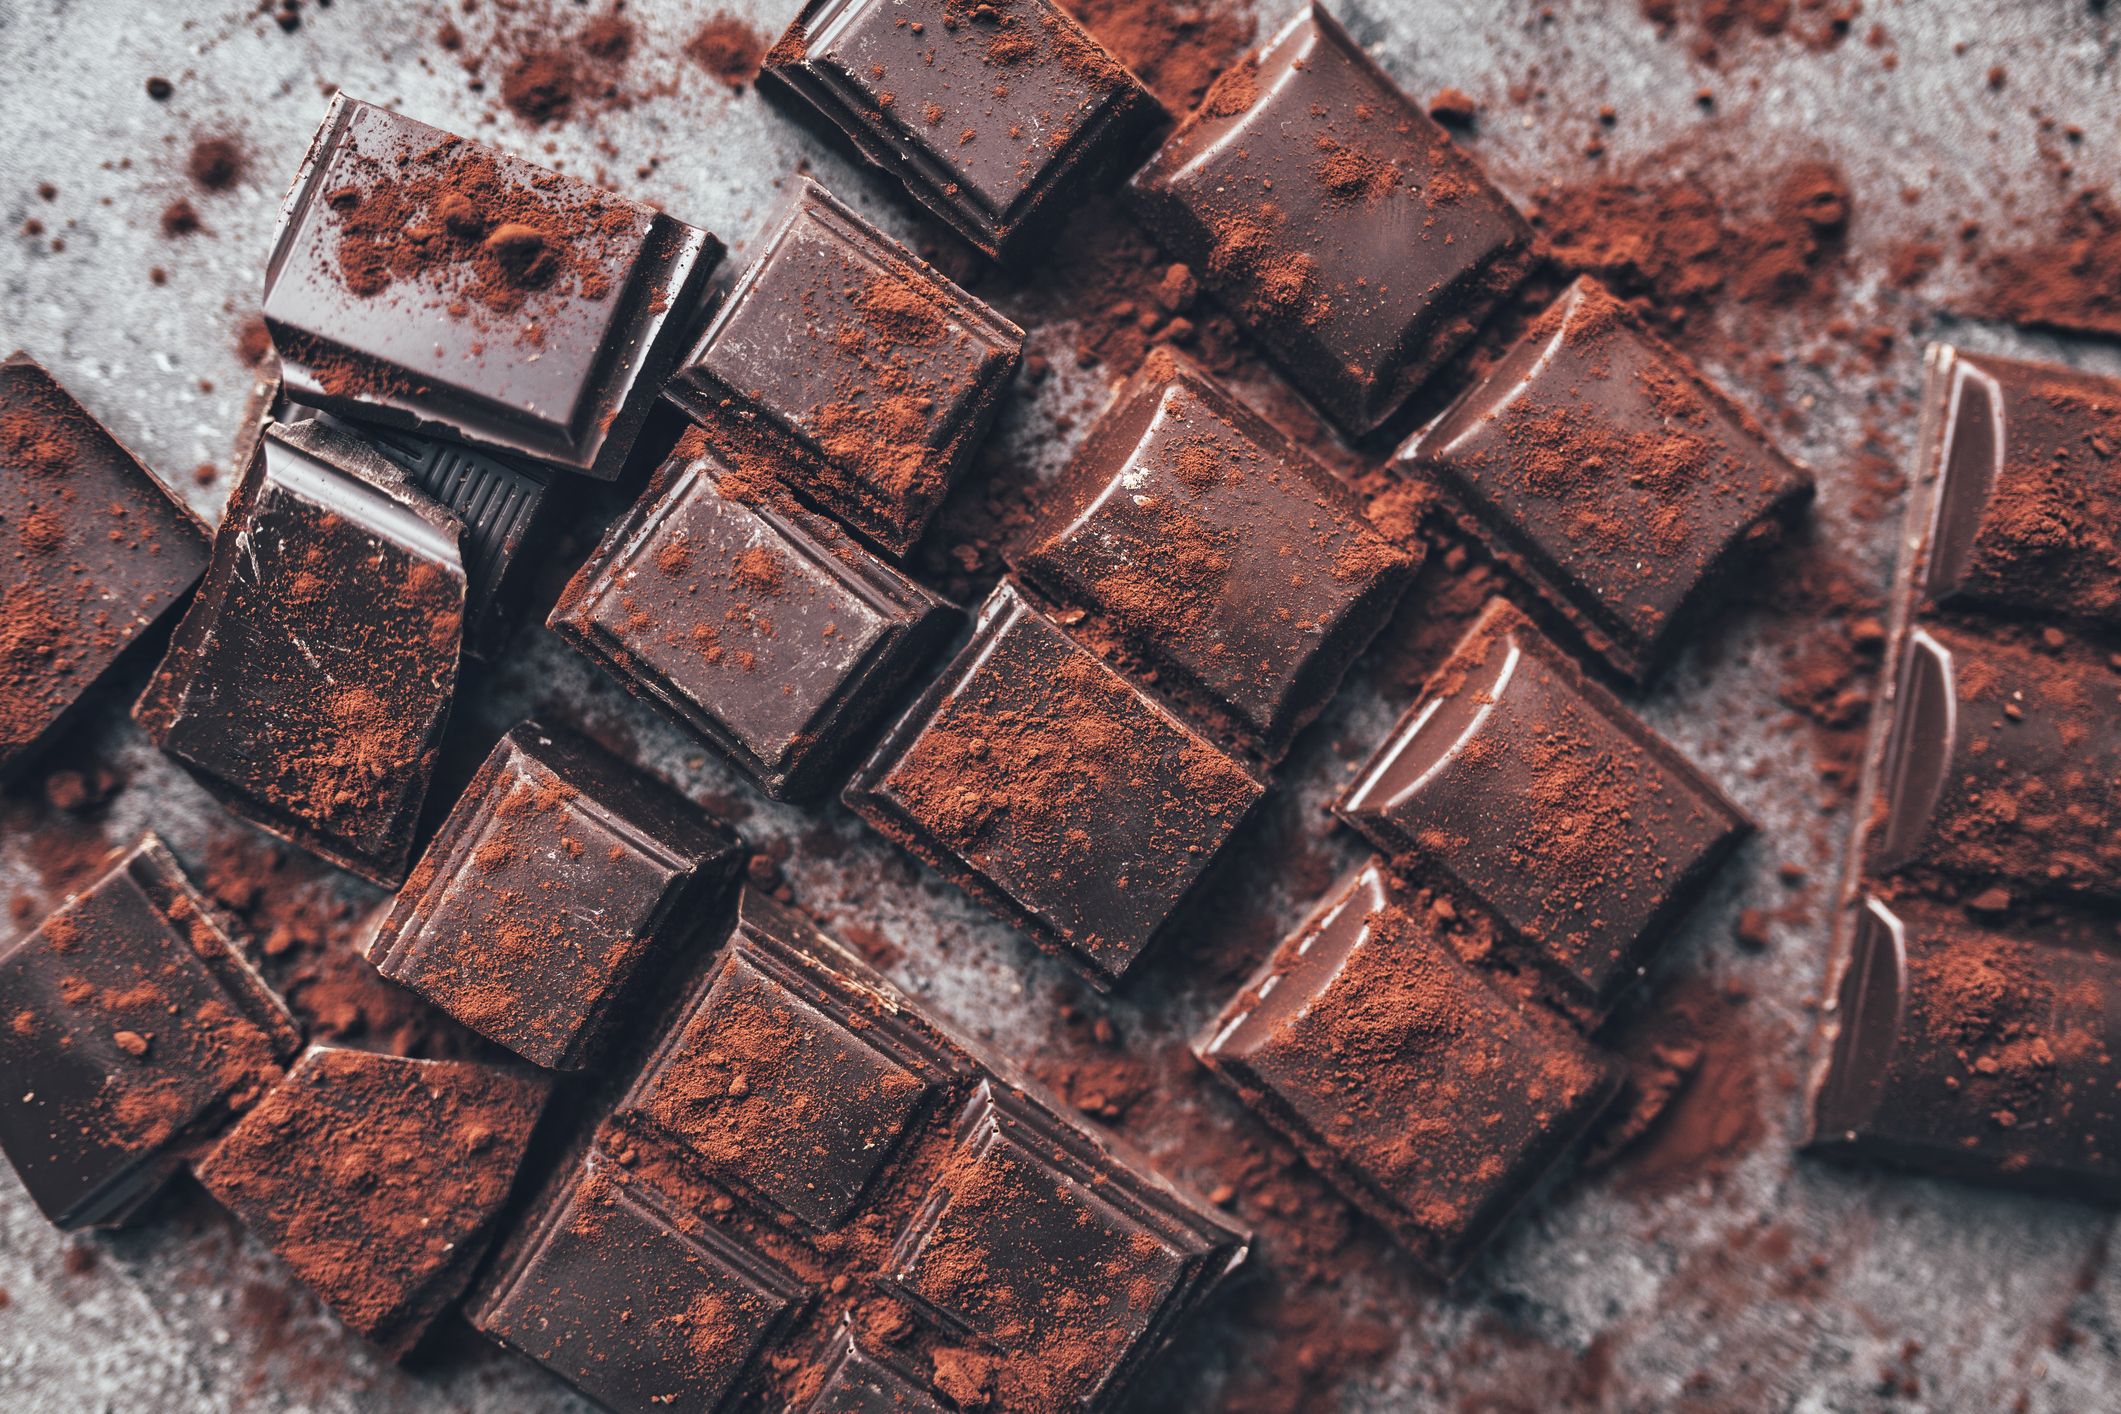 Zartbitterschokoladenstücke mit Kakao bestäubt